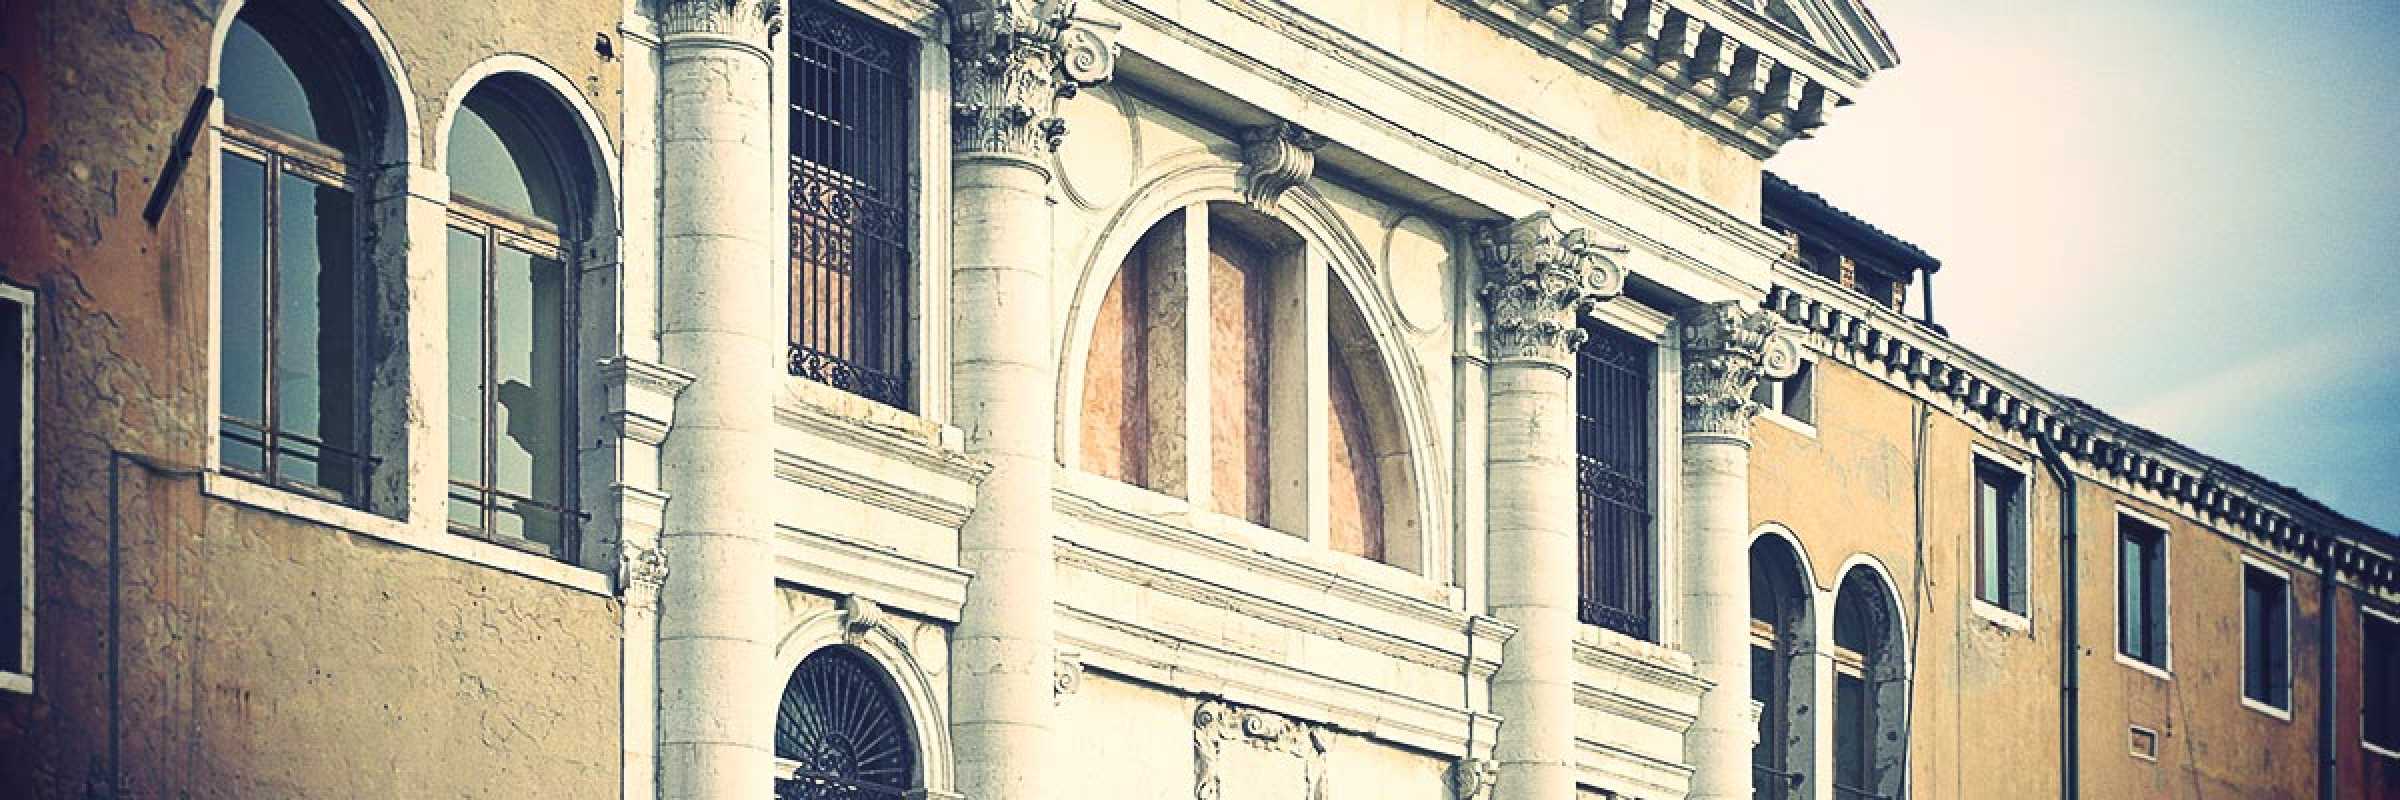 Parte della facciata della chiesa dei mendicanti.